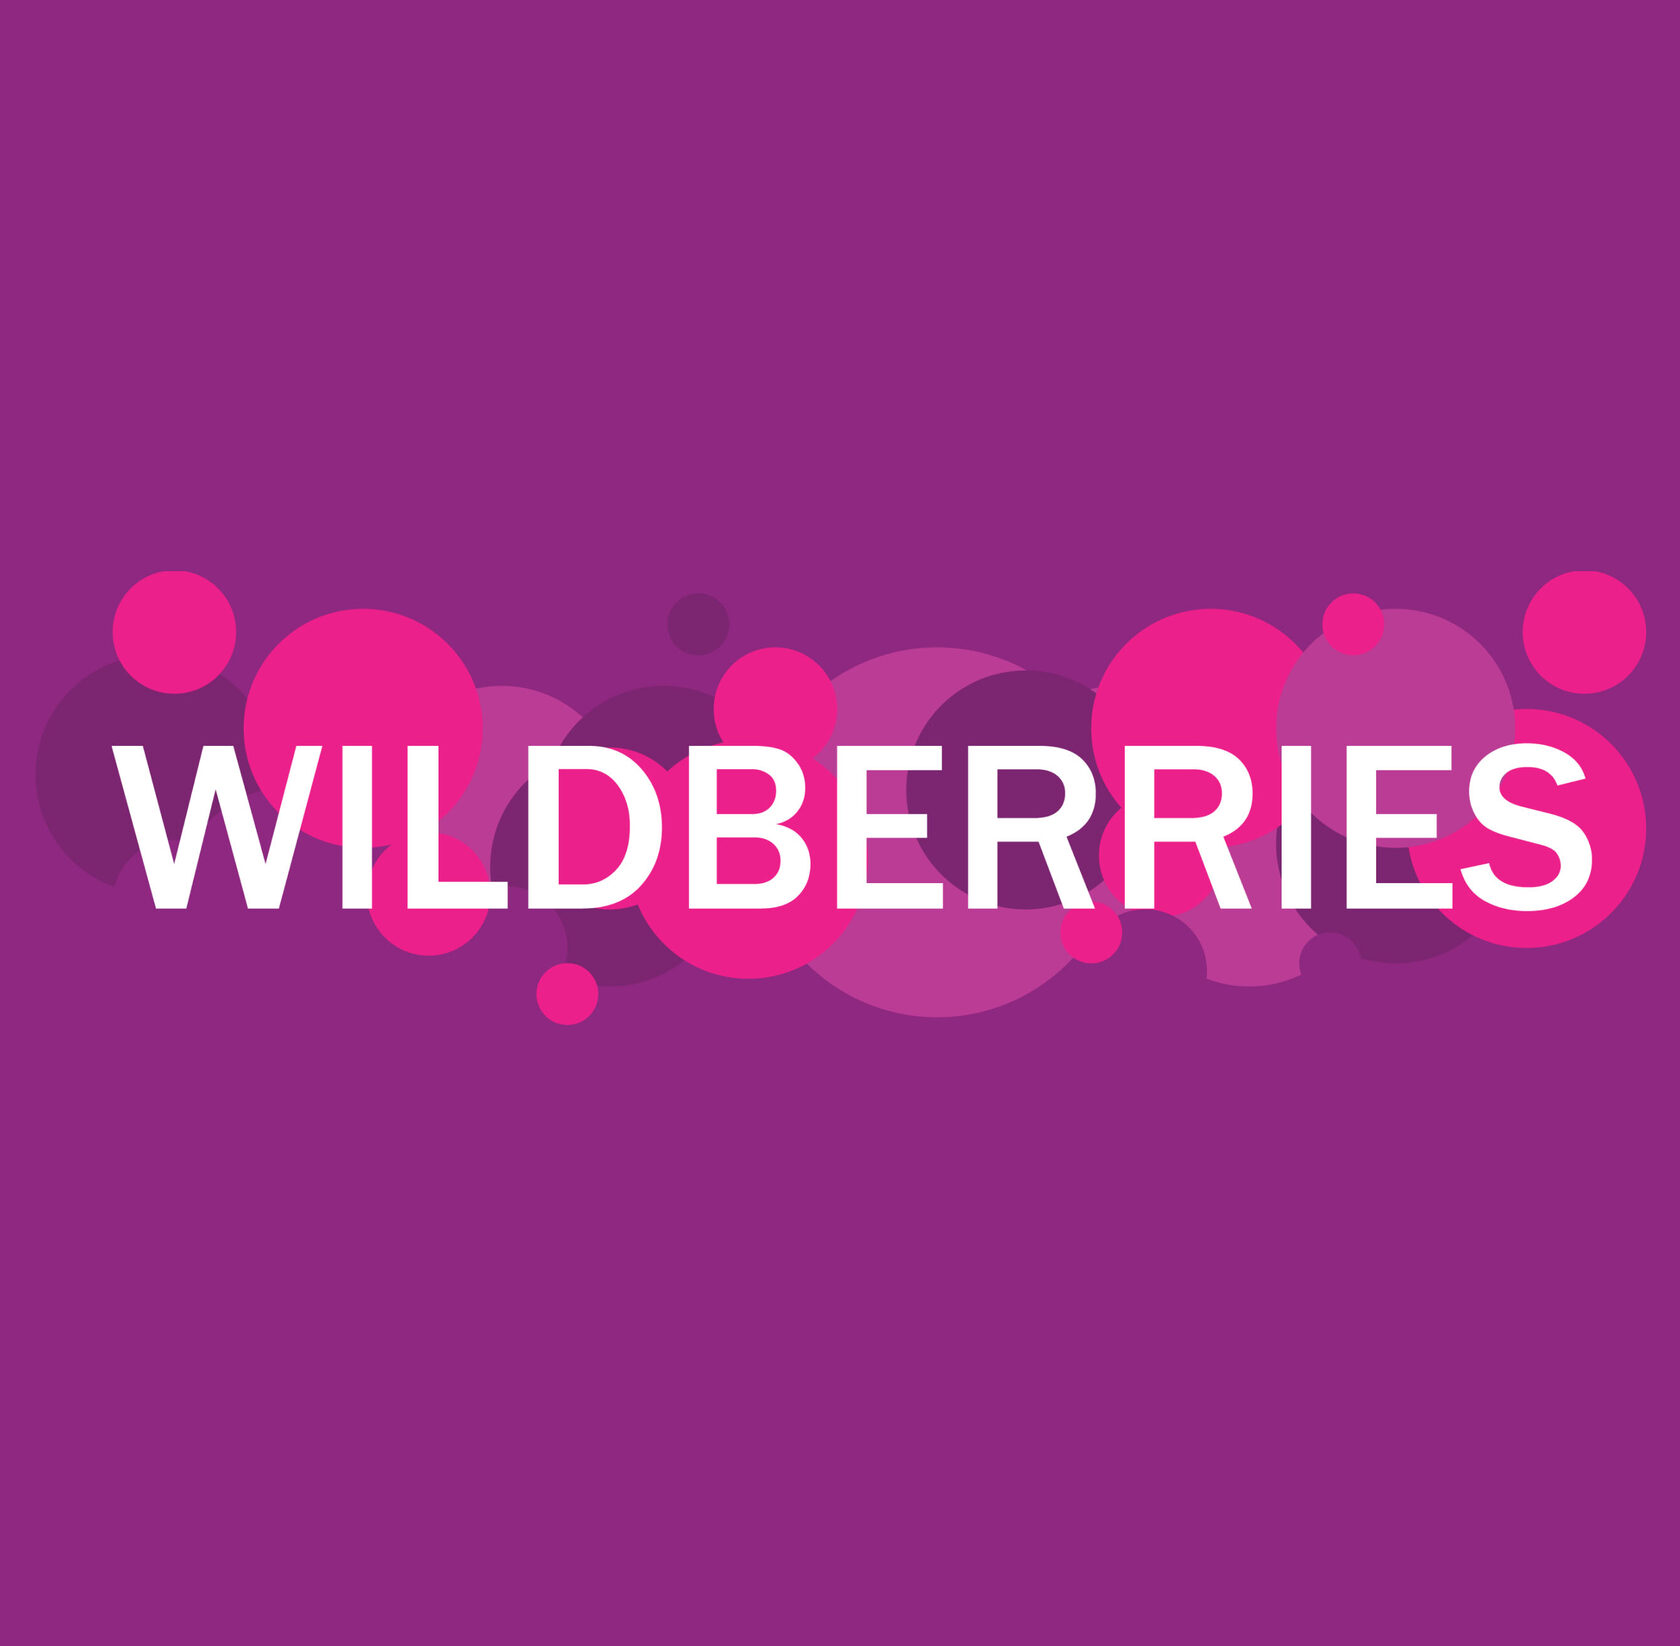 wildberries ru фото